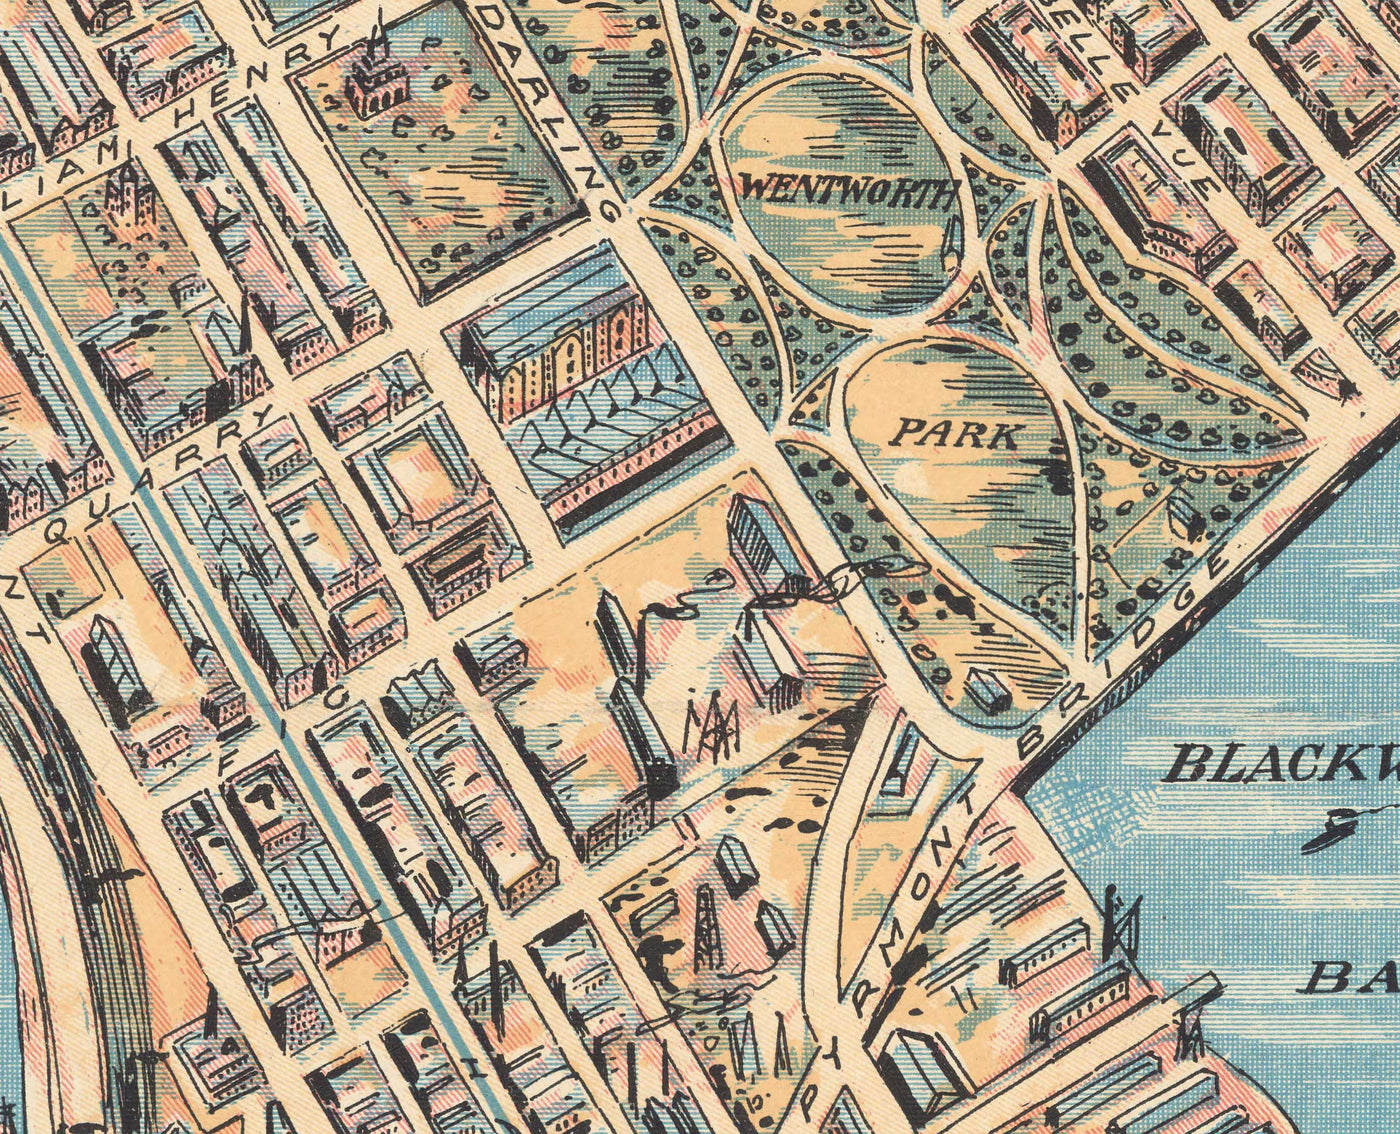 Ancienne carte de Sydney 1902 par John Andrew - Coves Bays, Harbors, Port Jackson, Gare centrale, Jardin botanique